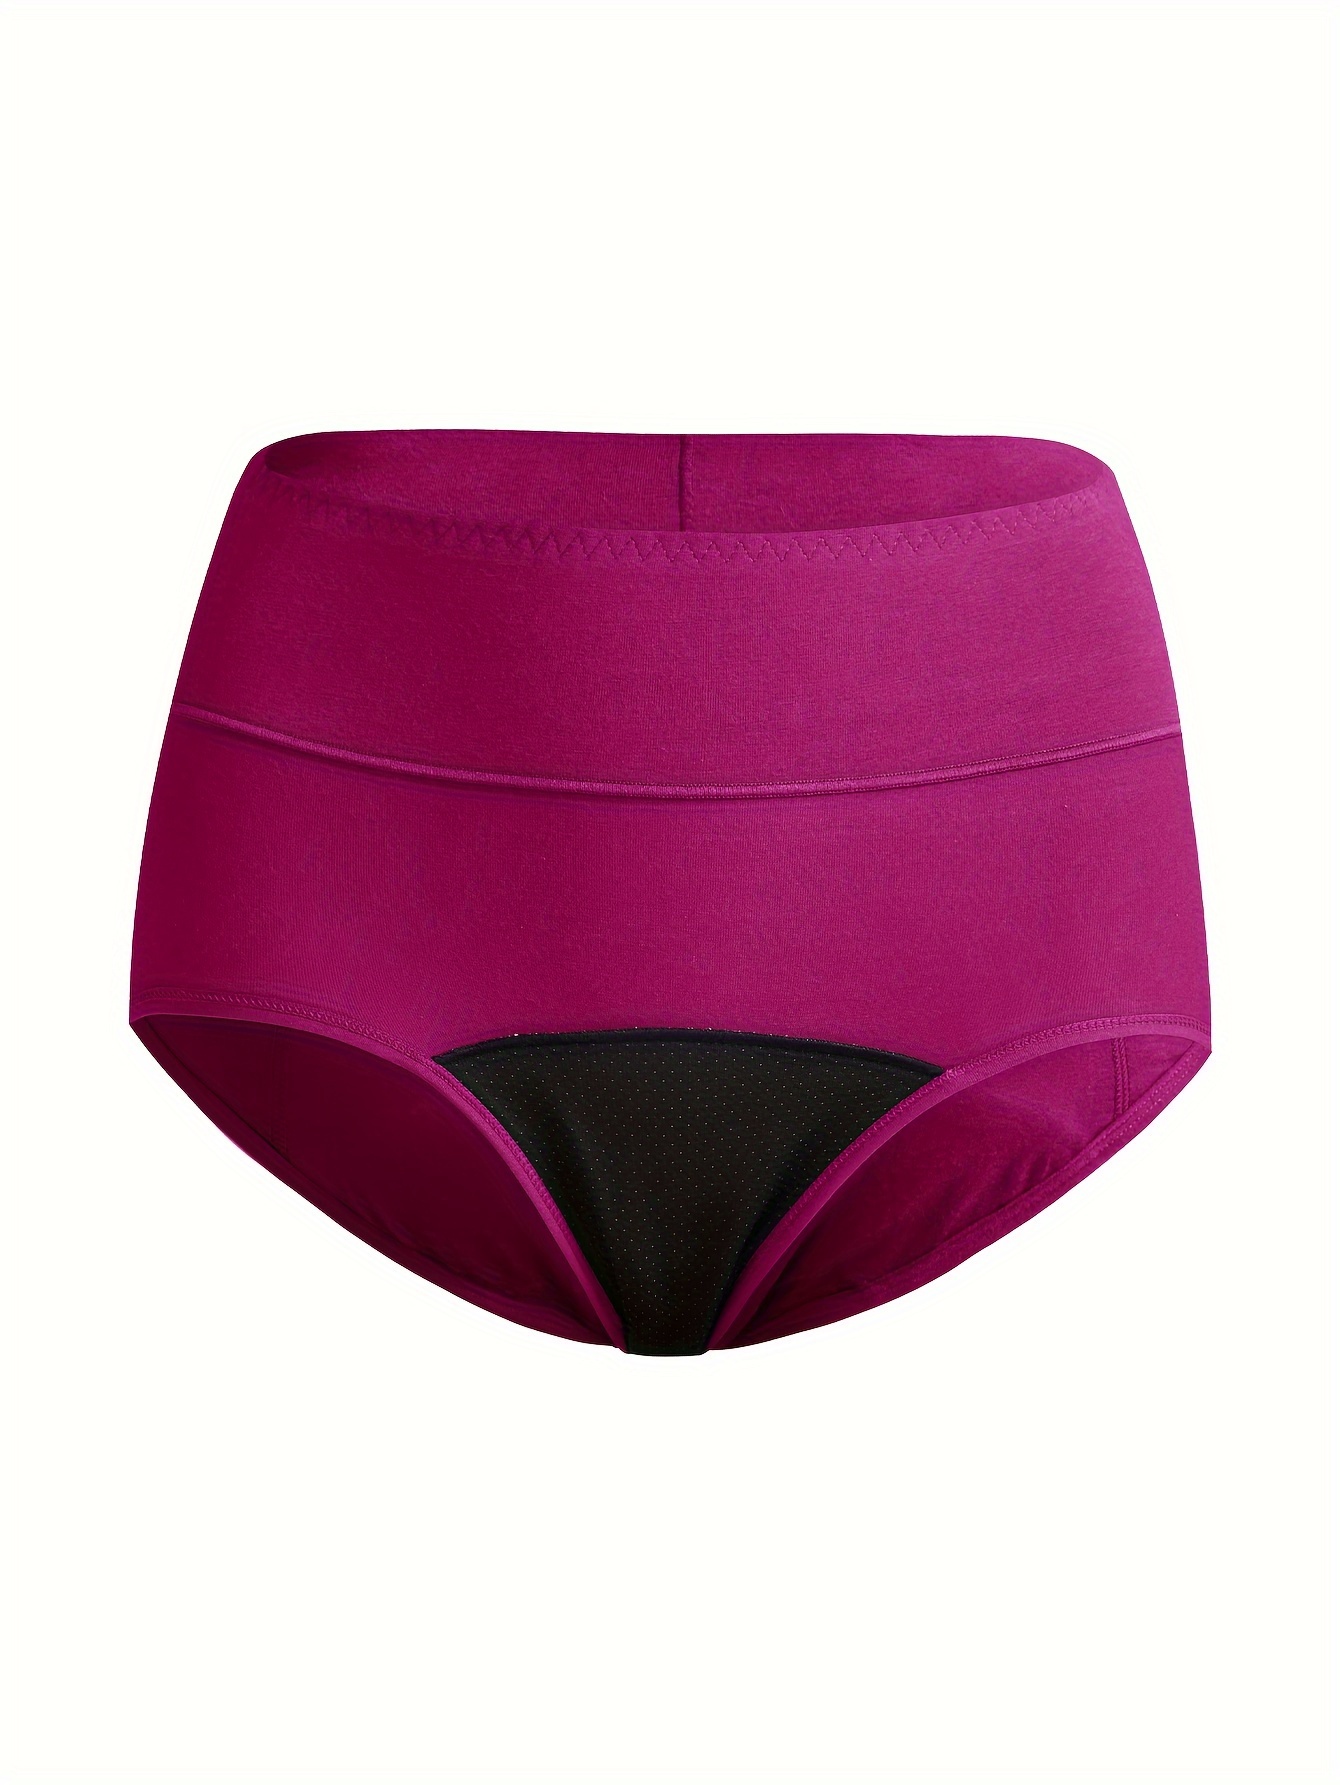 Underwear Women's Pantie Panties Washable Women's Leak Proof Plus Size  Lingerie for Women, Purple, Large : : Clothing, Shoes & Accessories